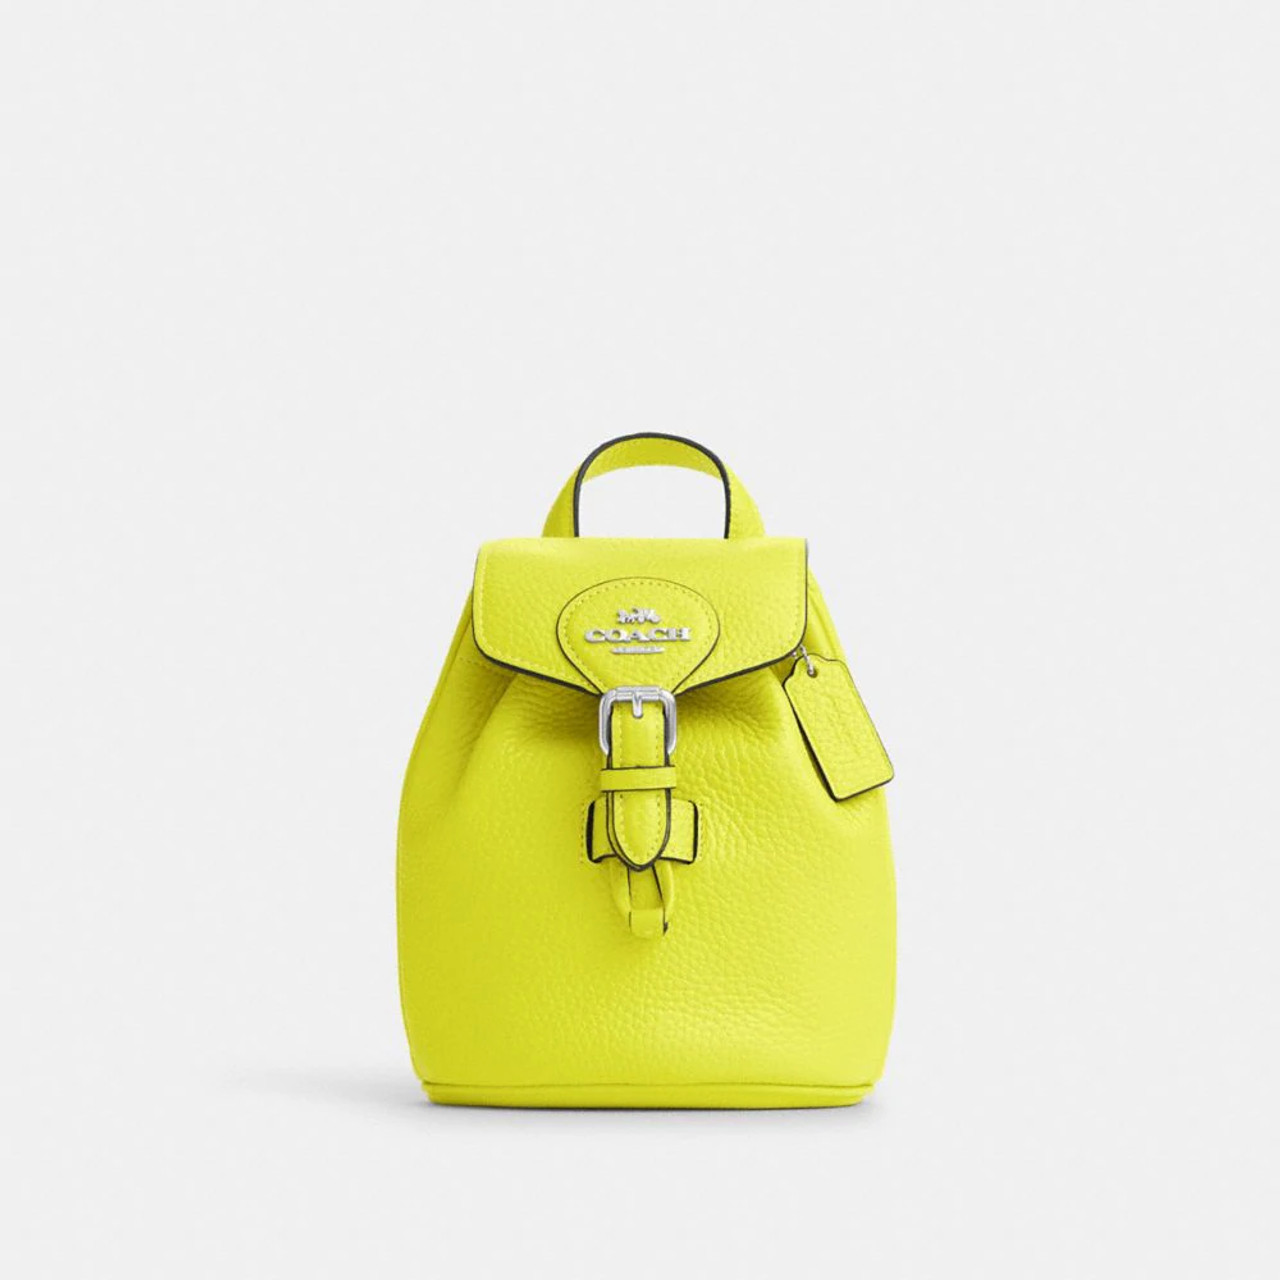 Sunny Yellow Saffiano Leather Mini Bag